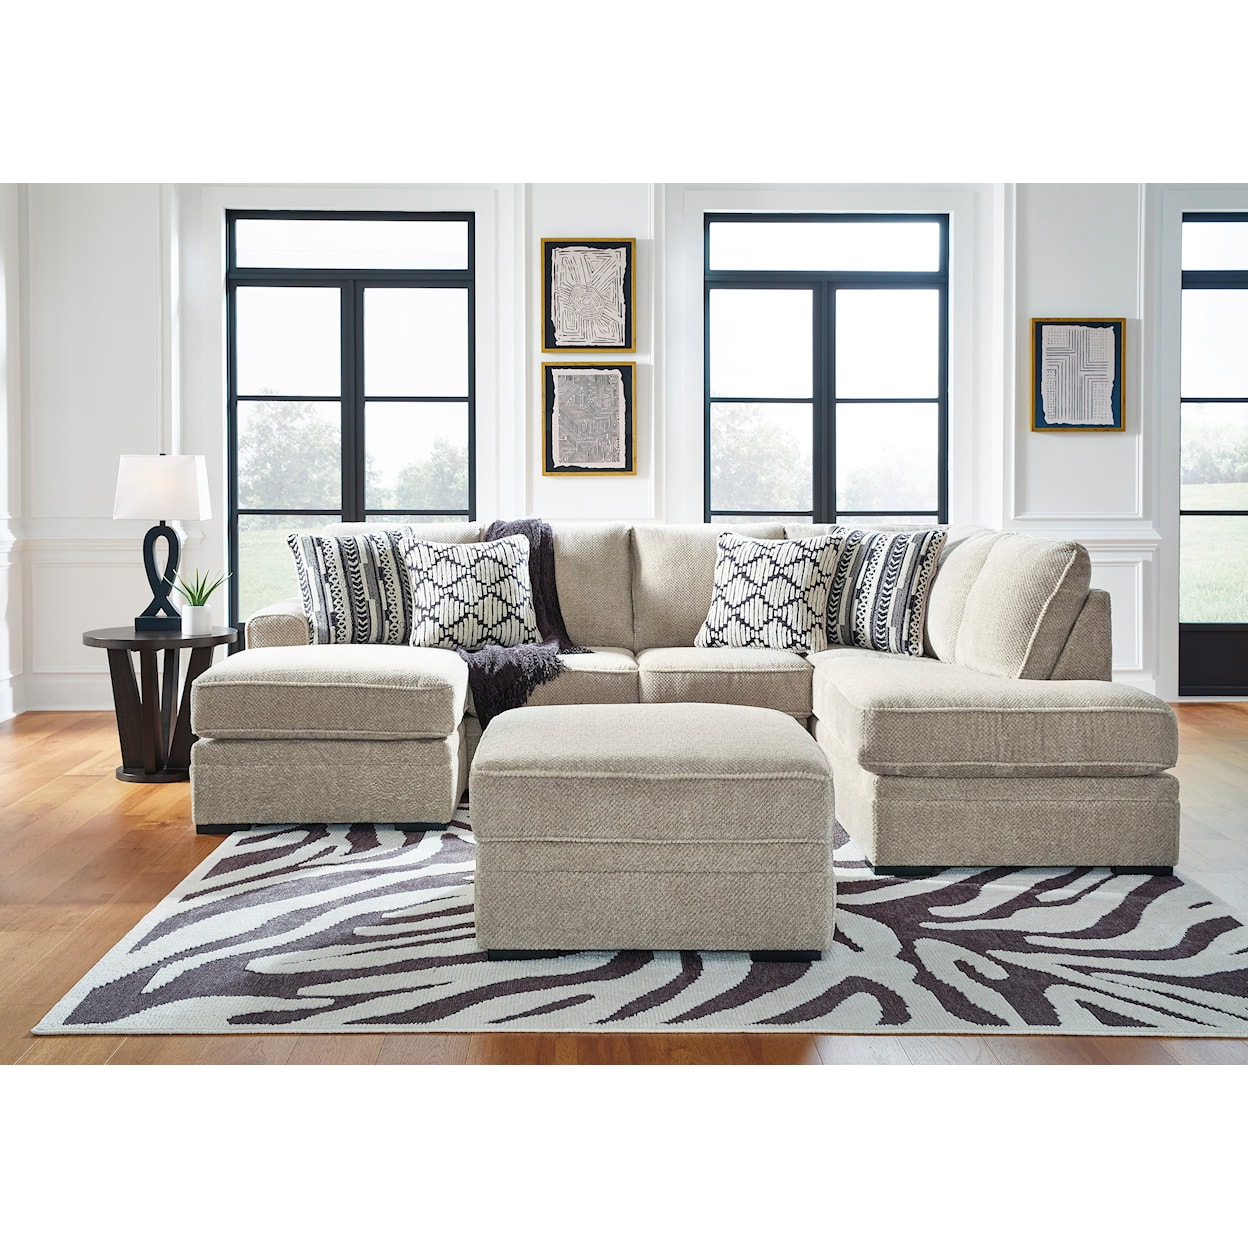 Ashley Furniture Benchcraft Calnita Living Room Set